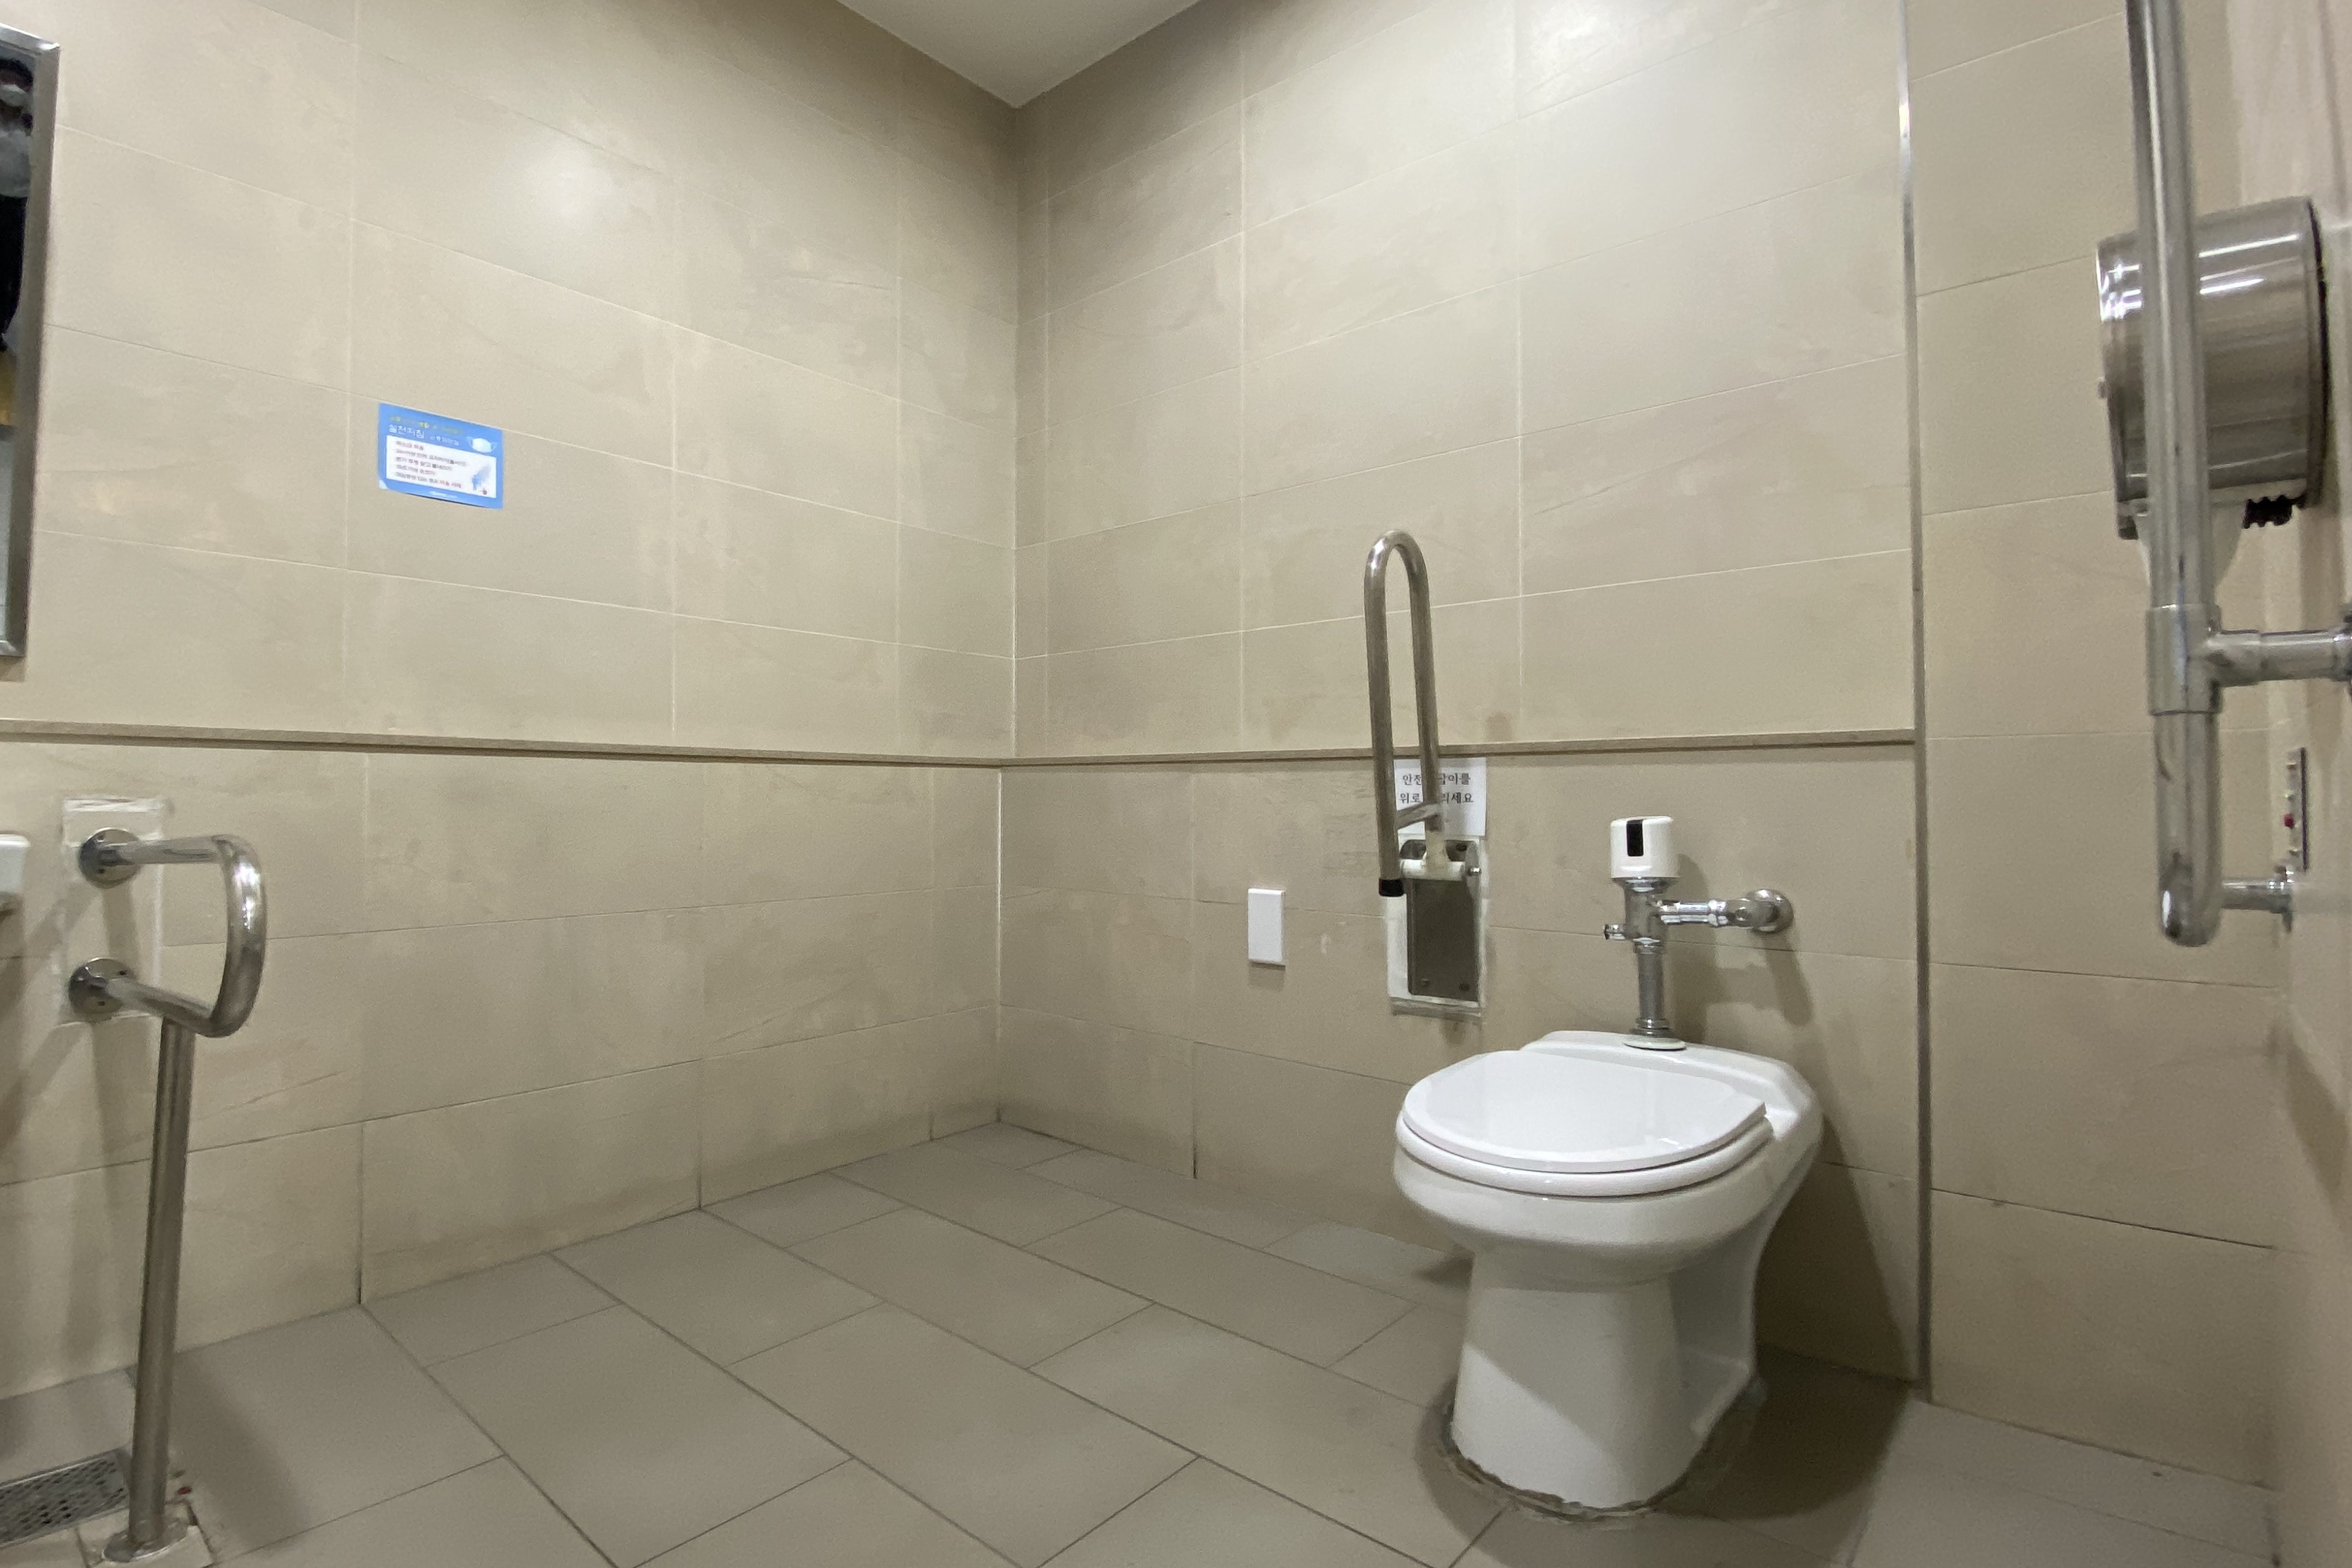 장애인화장실0 : 공간이 넓어 휠체어 사용 가능한 장애인화장실 내부 모습
